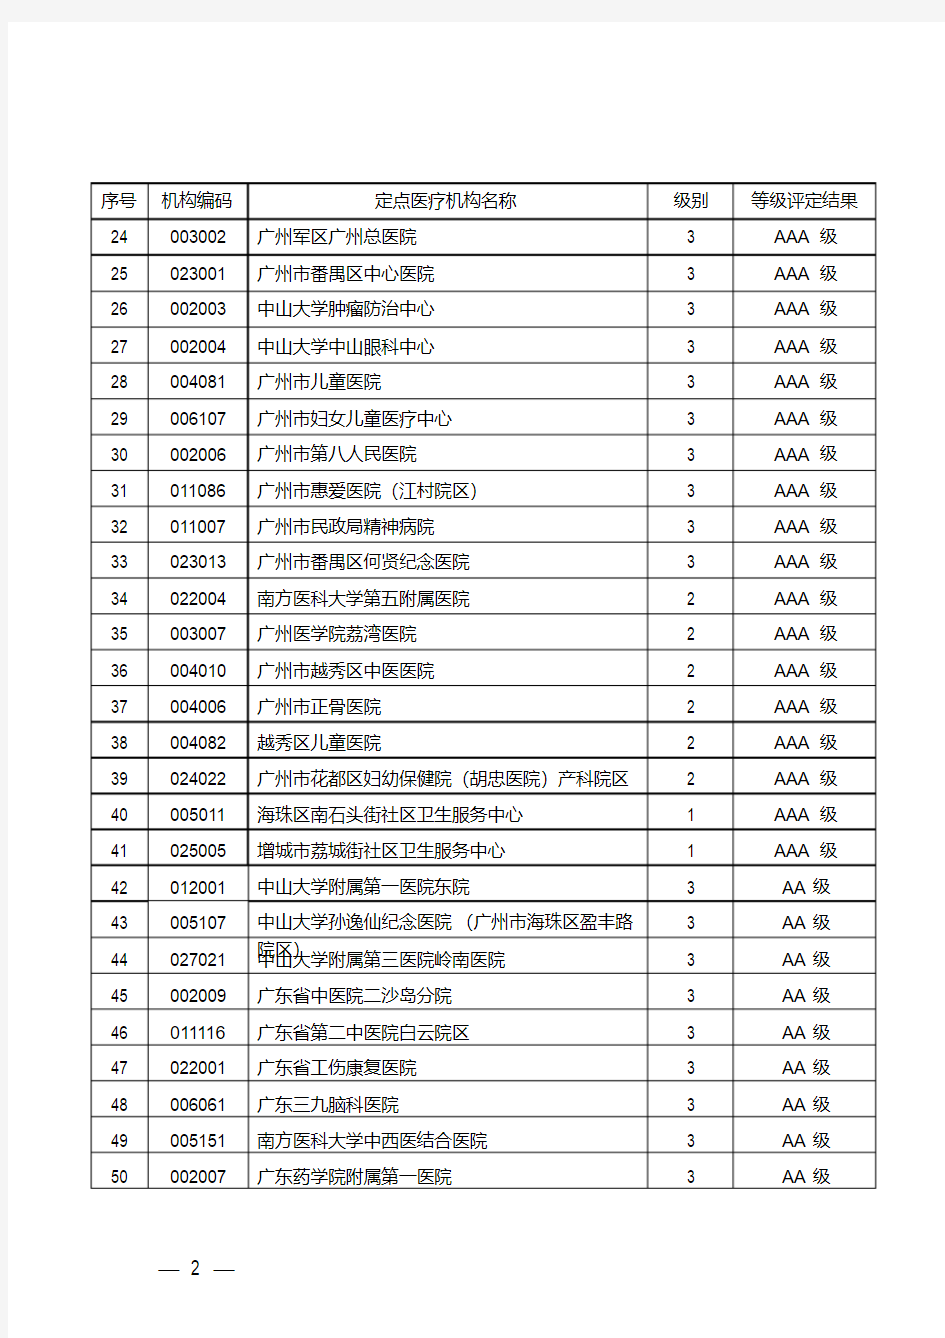 新版广州市定点医疗机构名单.pdf